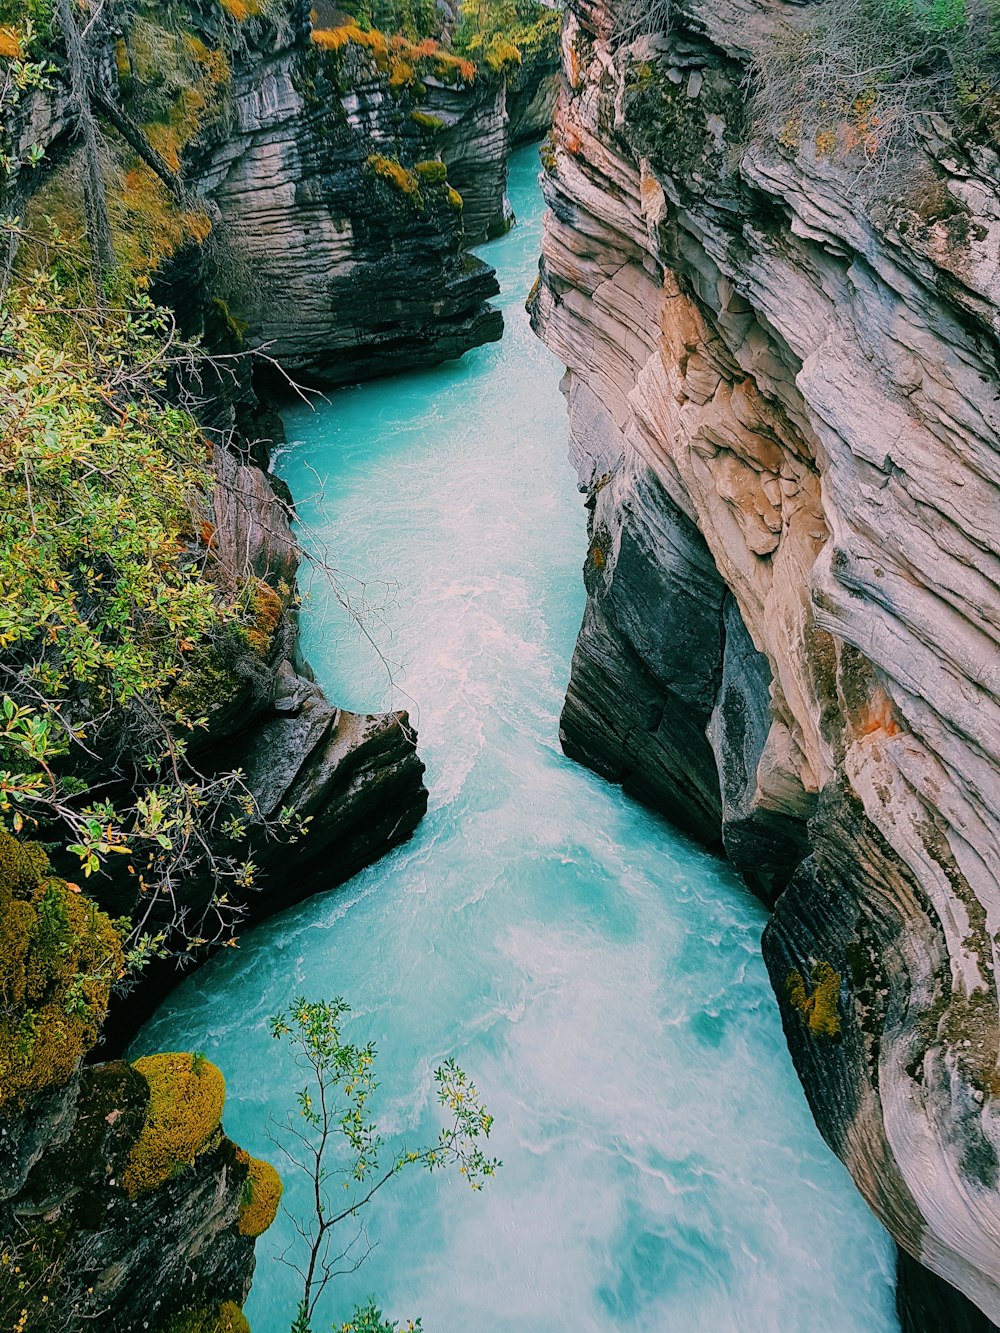 Athabasca Falls at Canada